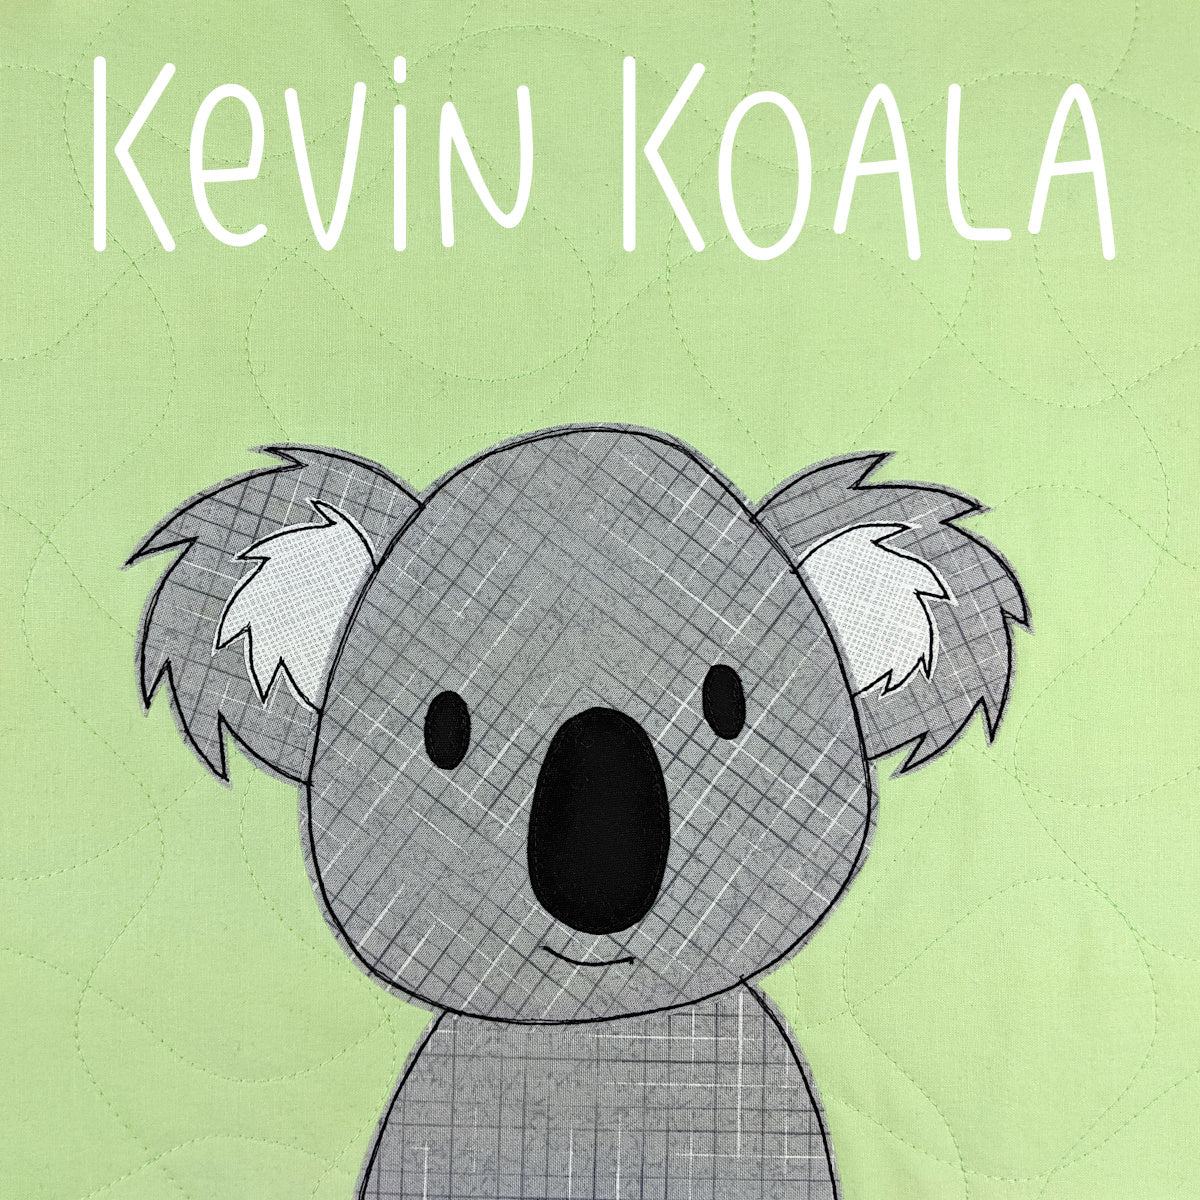 Kevin Koala Applique Pattern